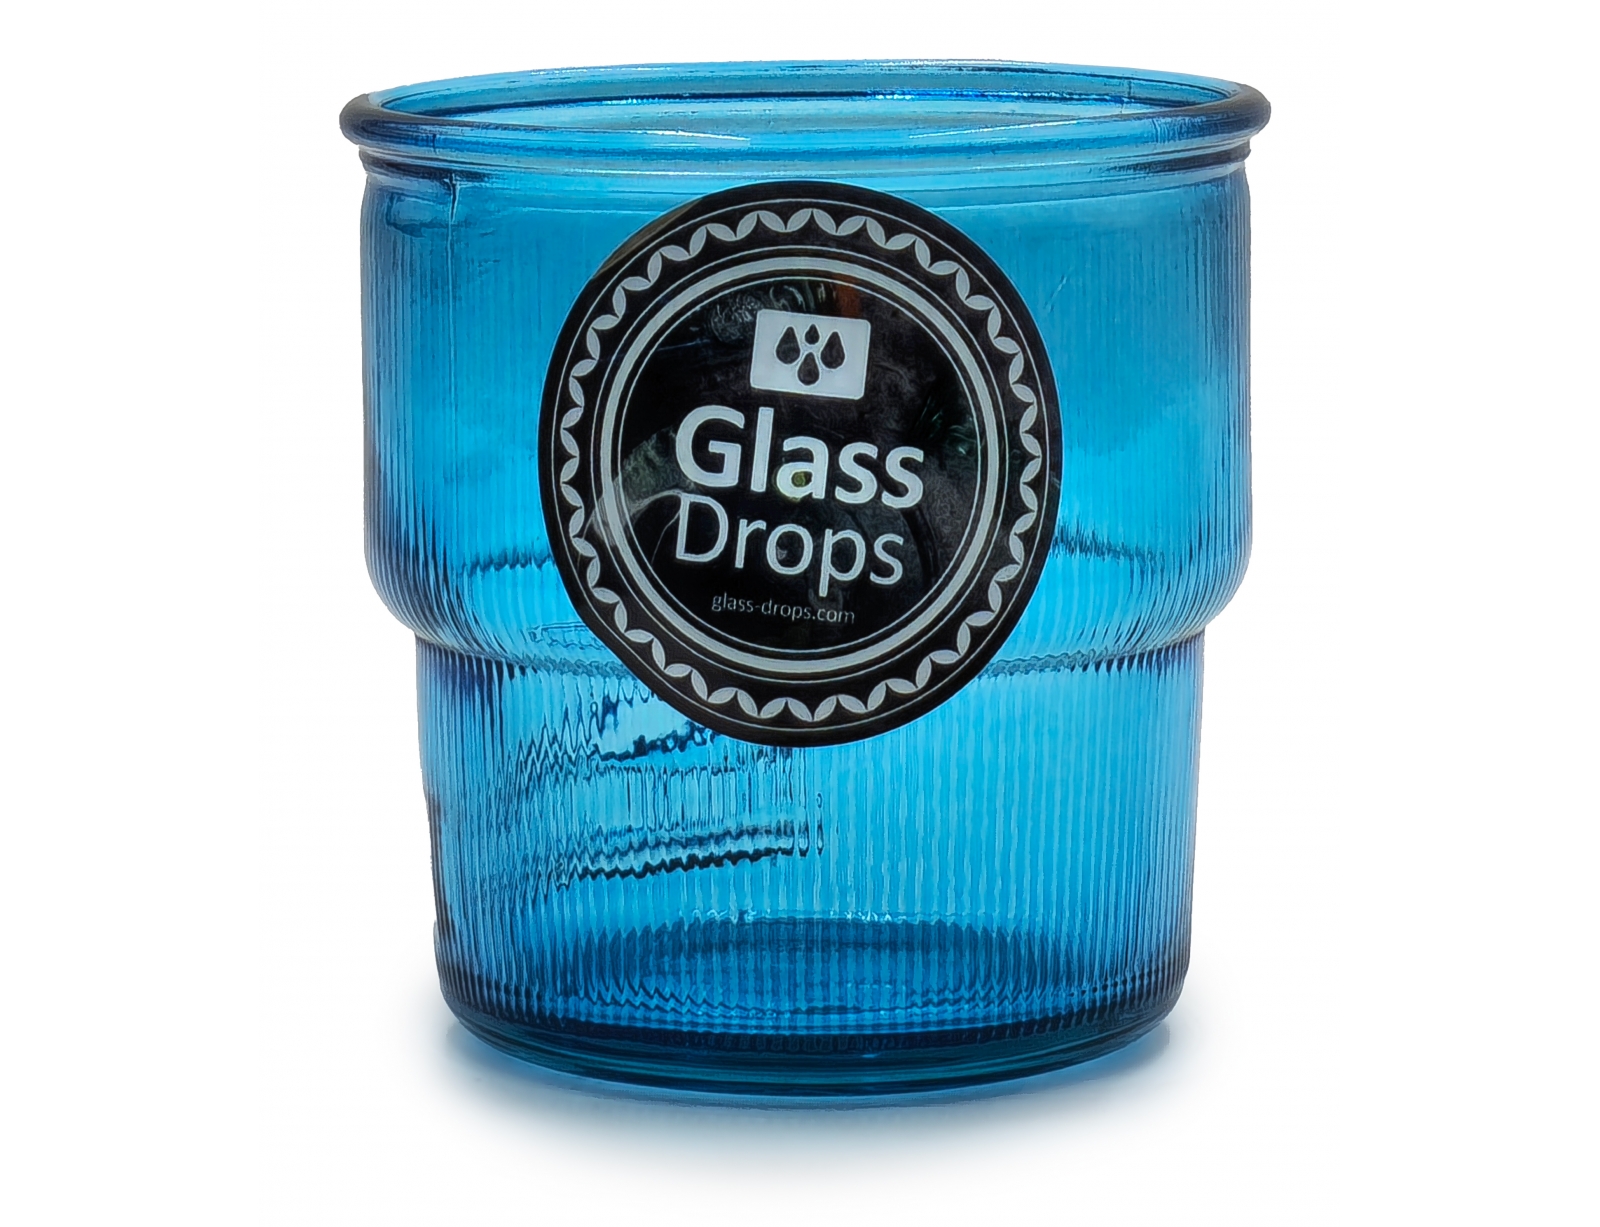 Εικόνα Ποτήρι Glass Drops Ribbed (2415DB09) Από ανακυκλωμένο γυαλί, Χωρητικότητας 300ml, Διαστάσεων Ø 9 x Υ 9 cm, Aqua Blue